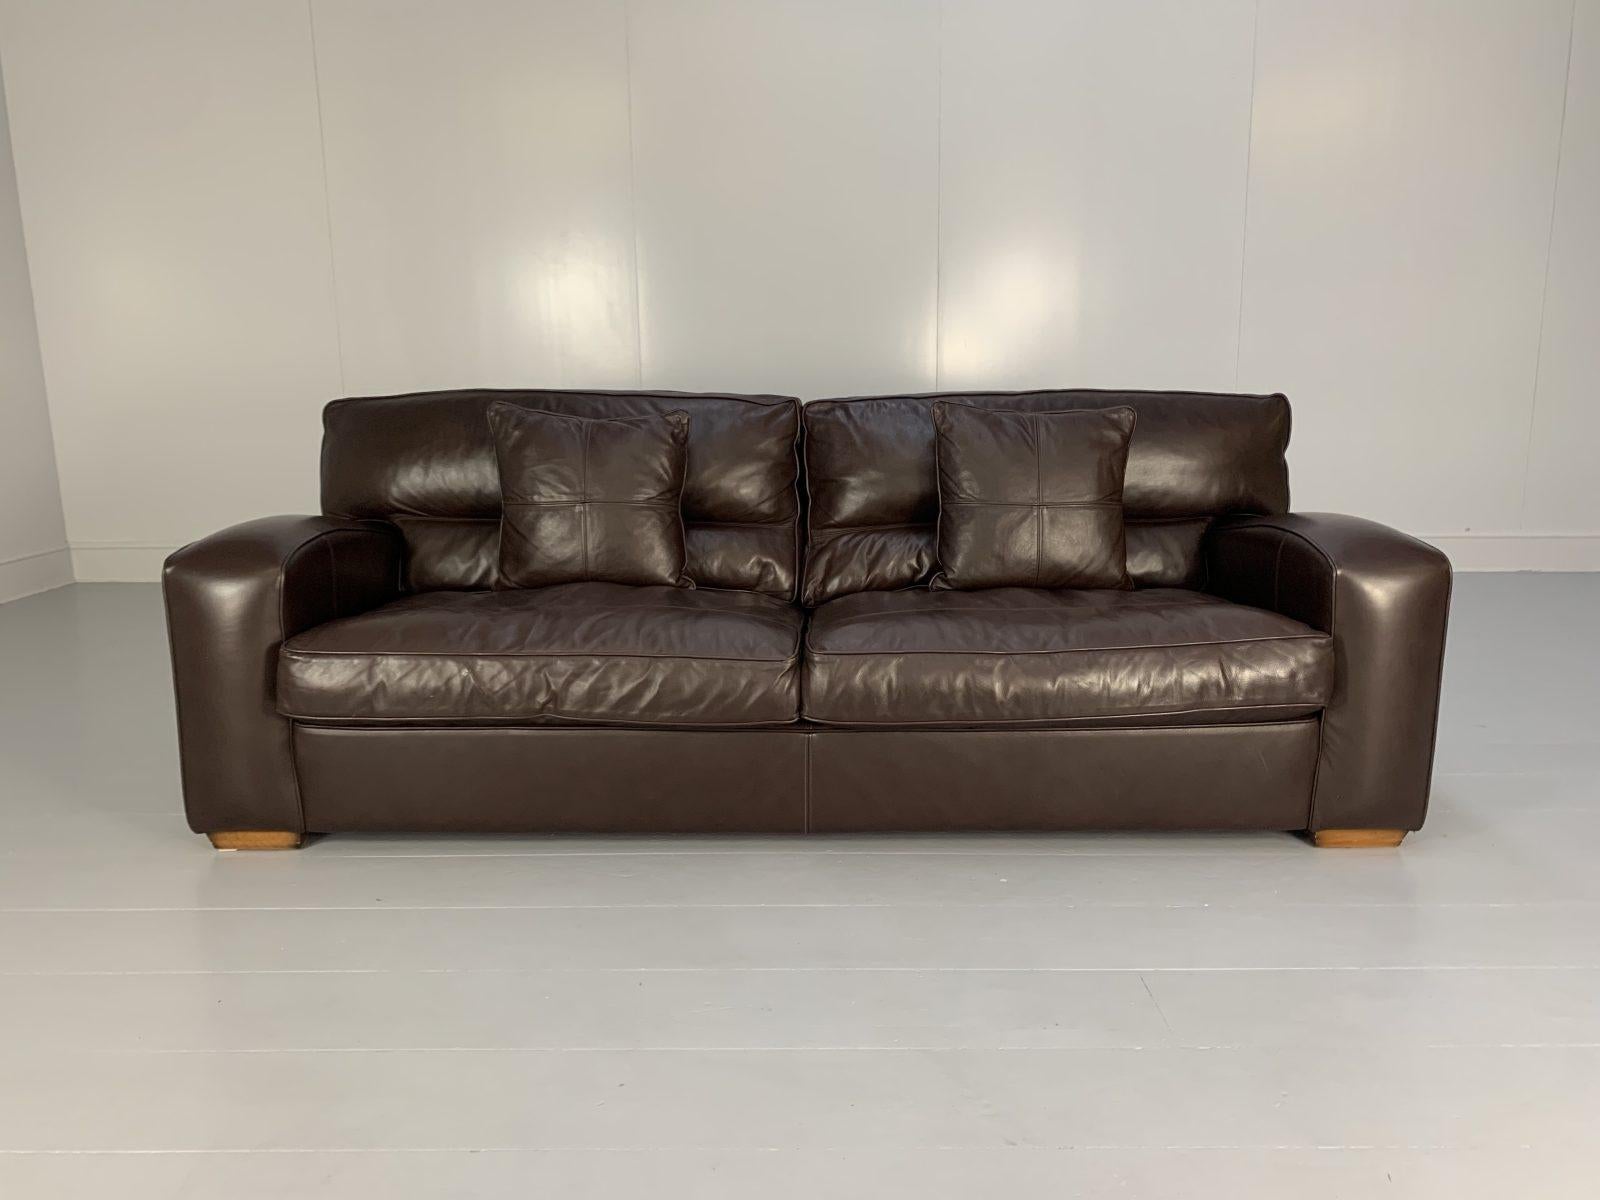 Bonjour les amis, et bienvenue à une nouvelle offre incontournable de Lord Browns Furniture, la première source de canapés et de chaises de qualité au Royaume-Uni.

Il s'agit d'un canapé 3 places Duresta 